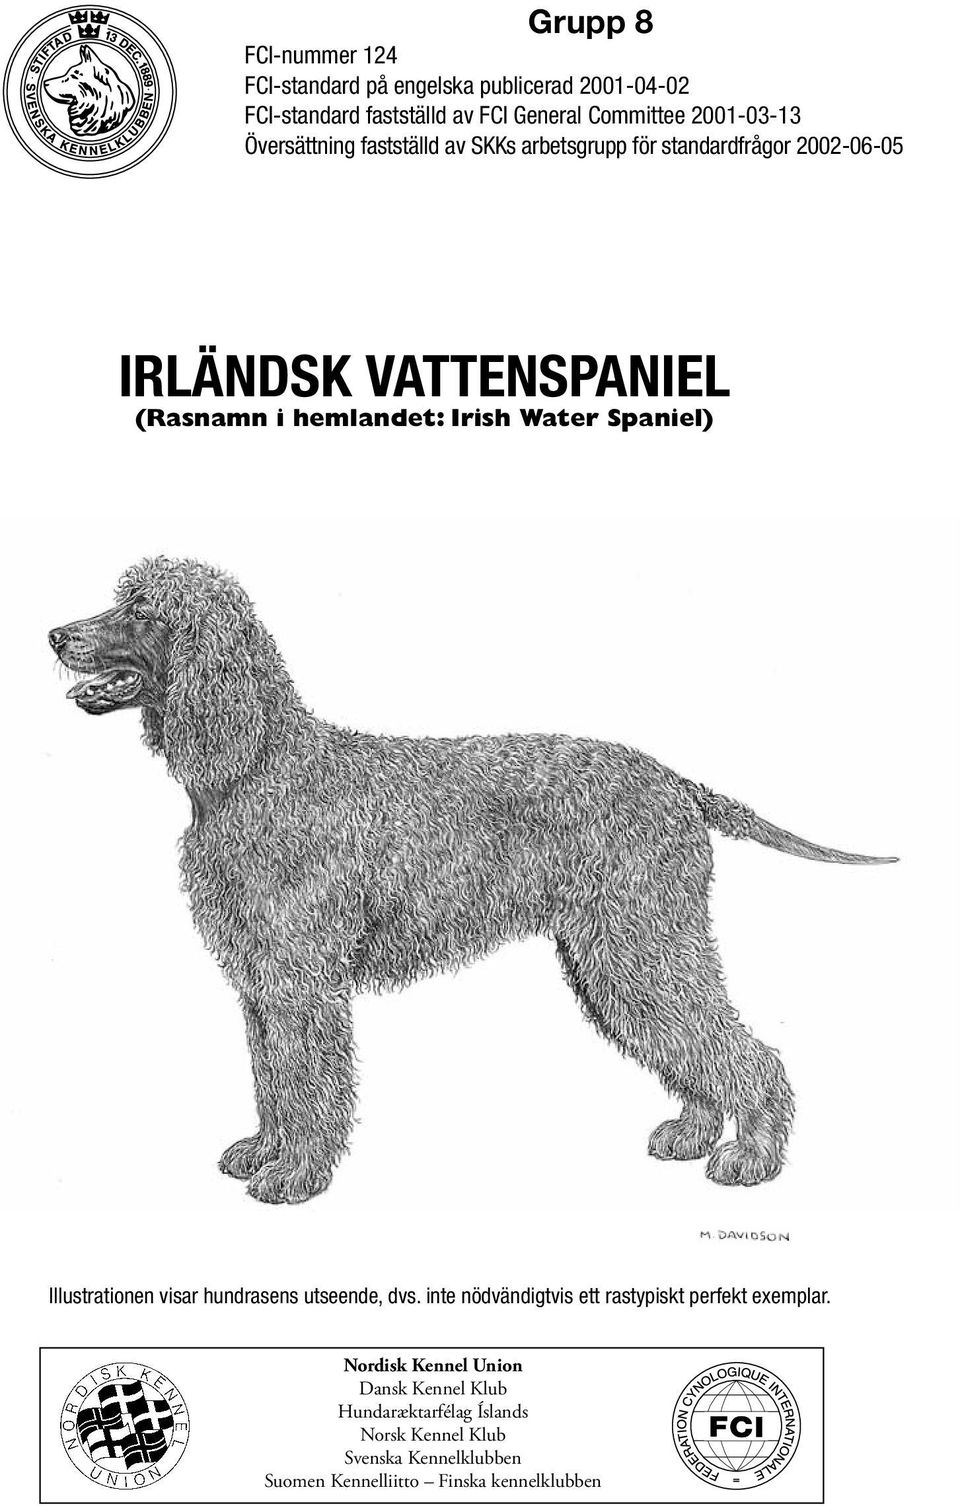 hemlandet: Irish Water Spaniel) Illustrationen visar hundrasens utseende, dvs.